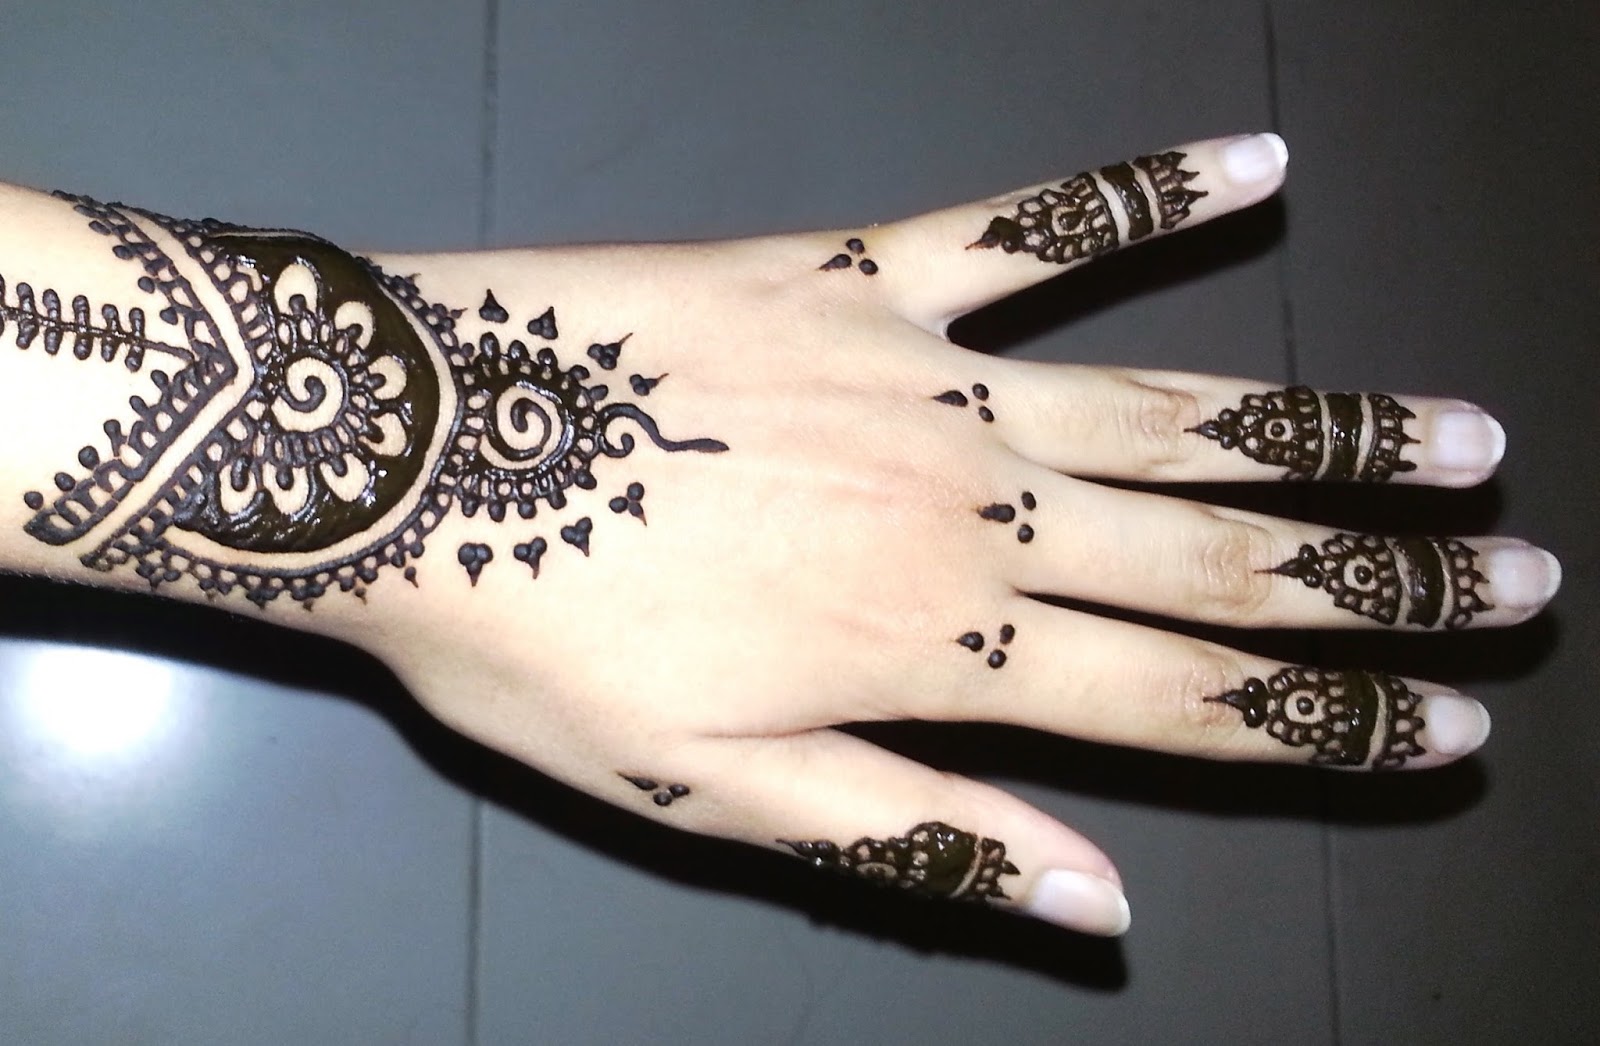 Contoh Gambar Motif Henna di Jari Contoh Gambar Henna